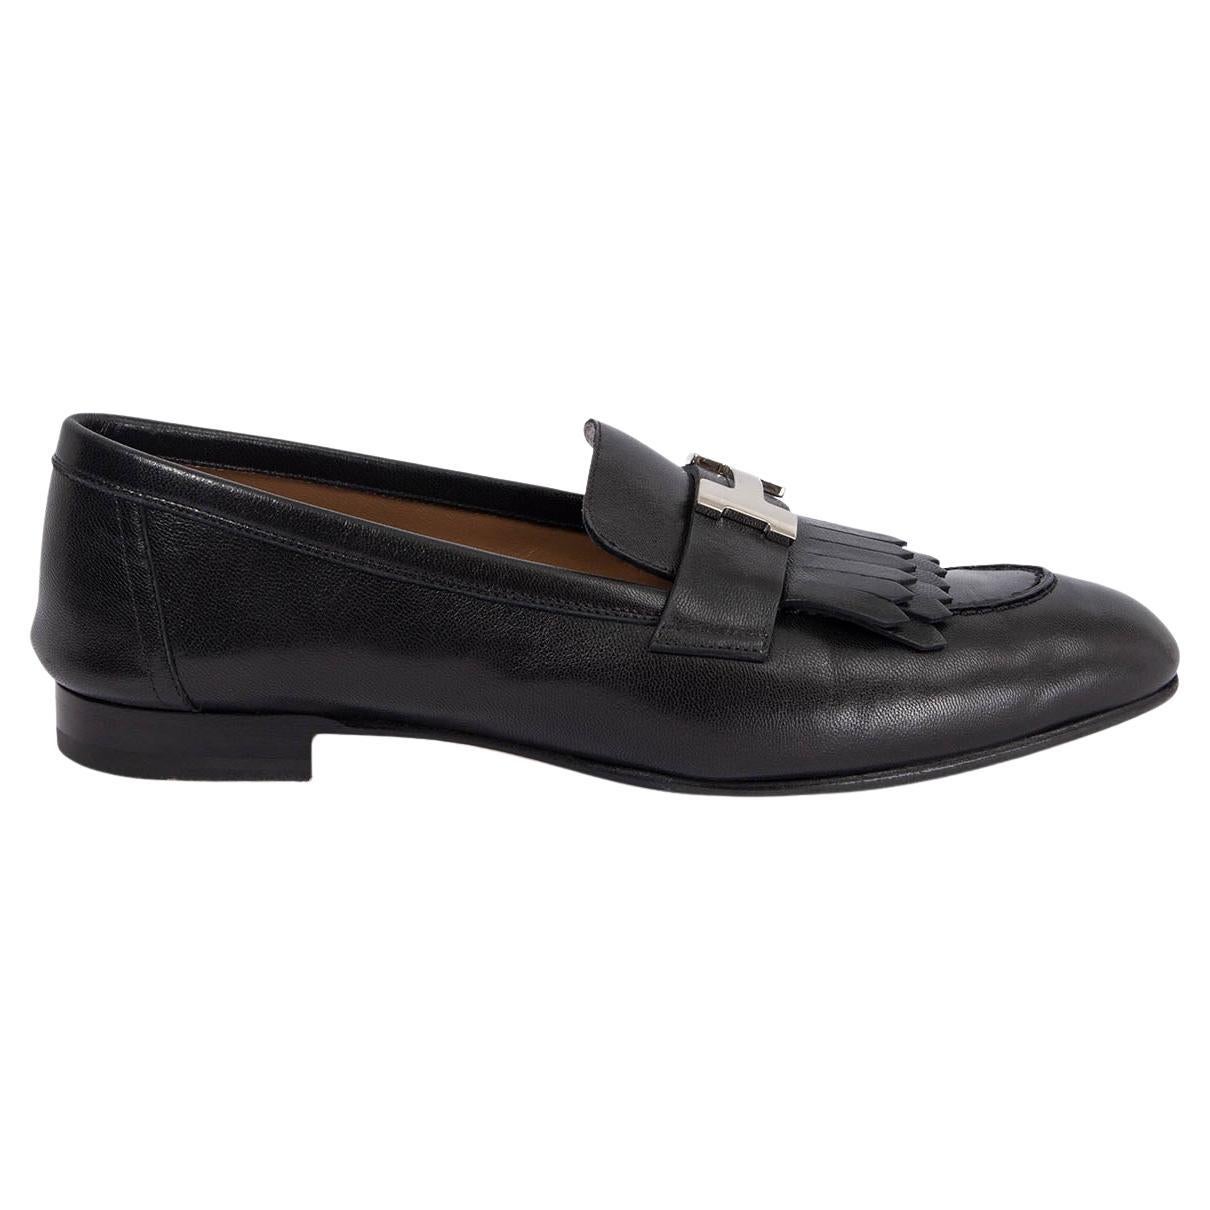 HERMES black leather ROYAL CONSTANCE FRINGE Loafers Flats Shoes 38.5